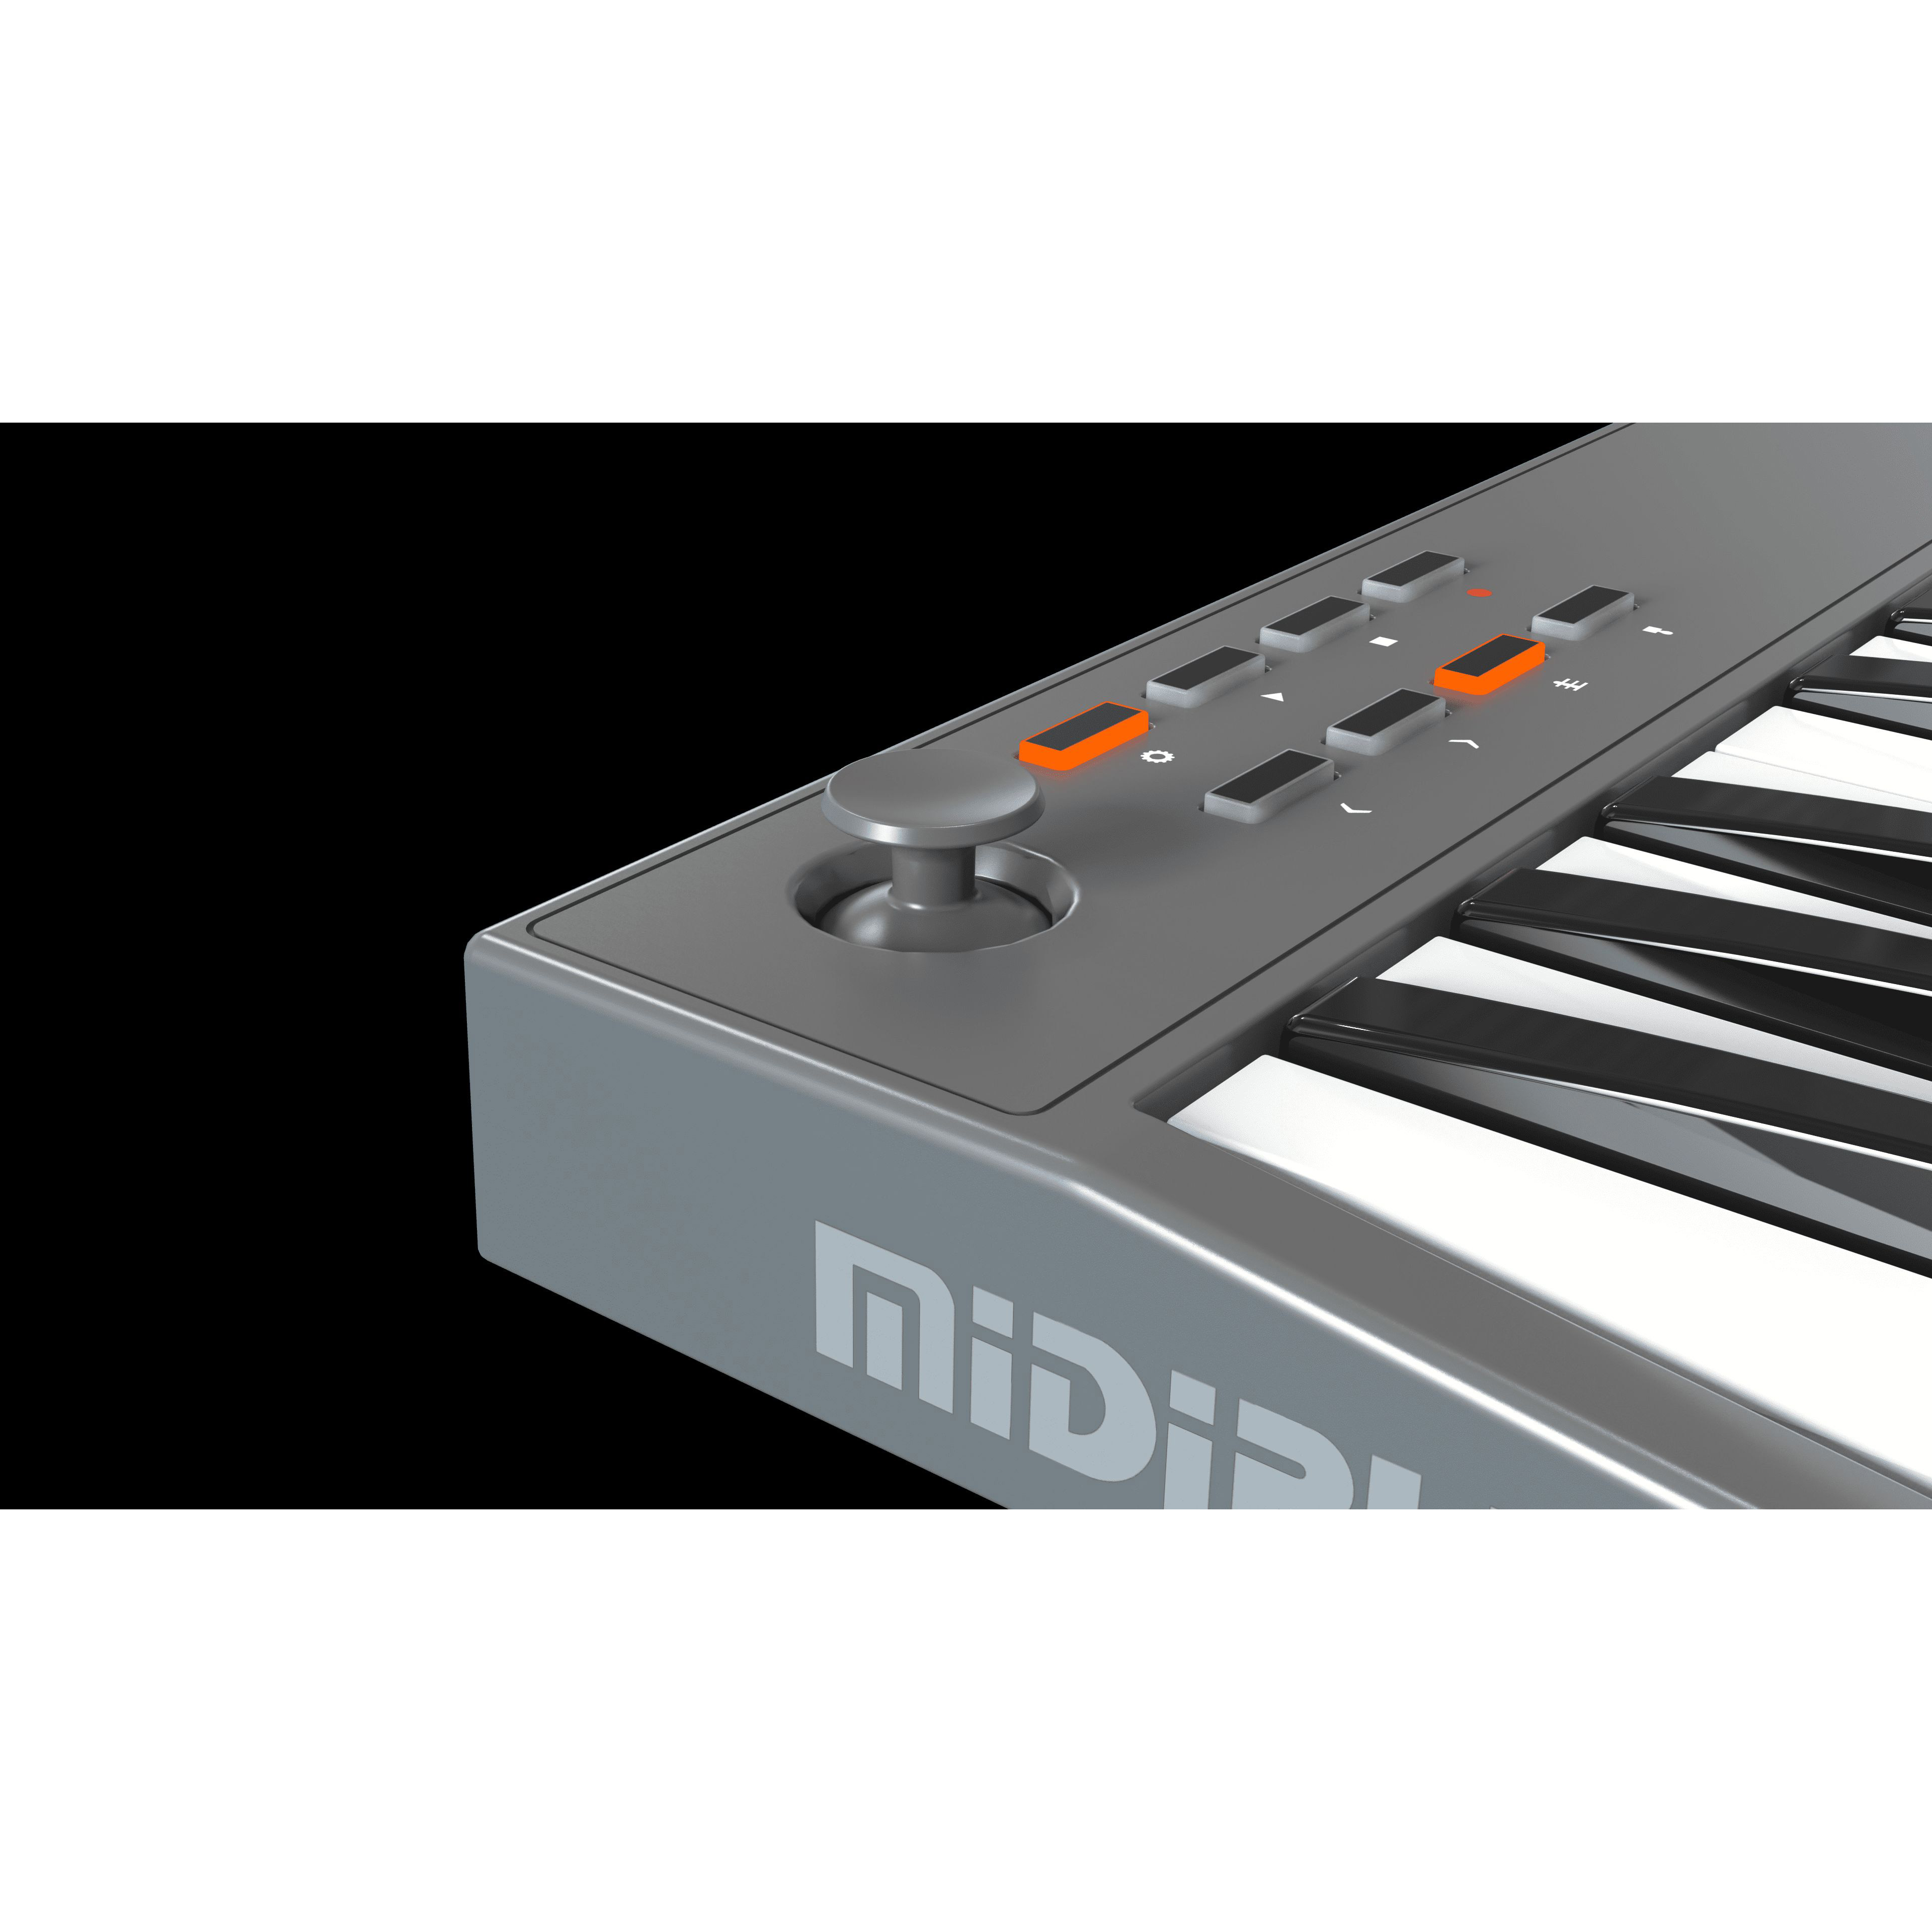 Midiplus TINY - миди-клавиатура 32 клавиши Миди-клавиатуры